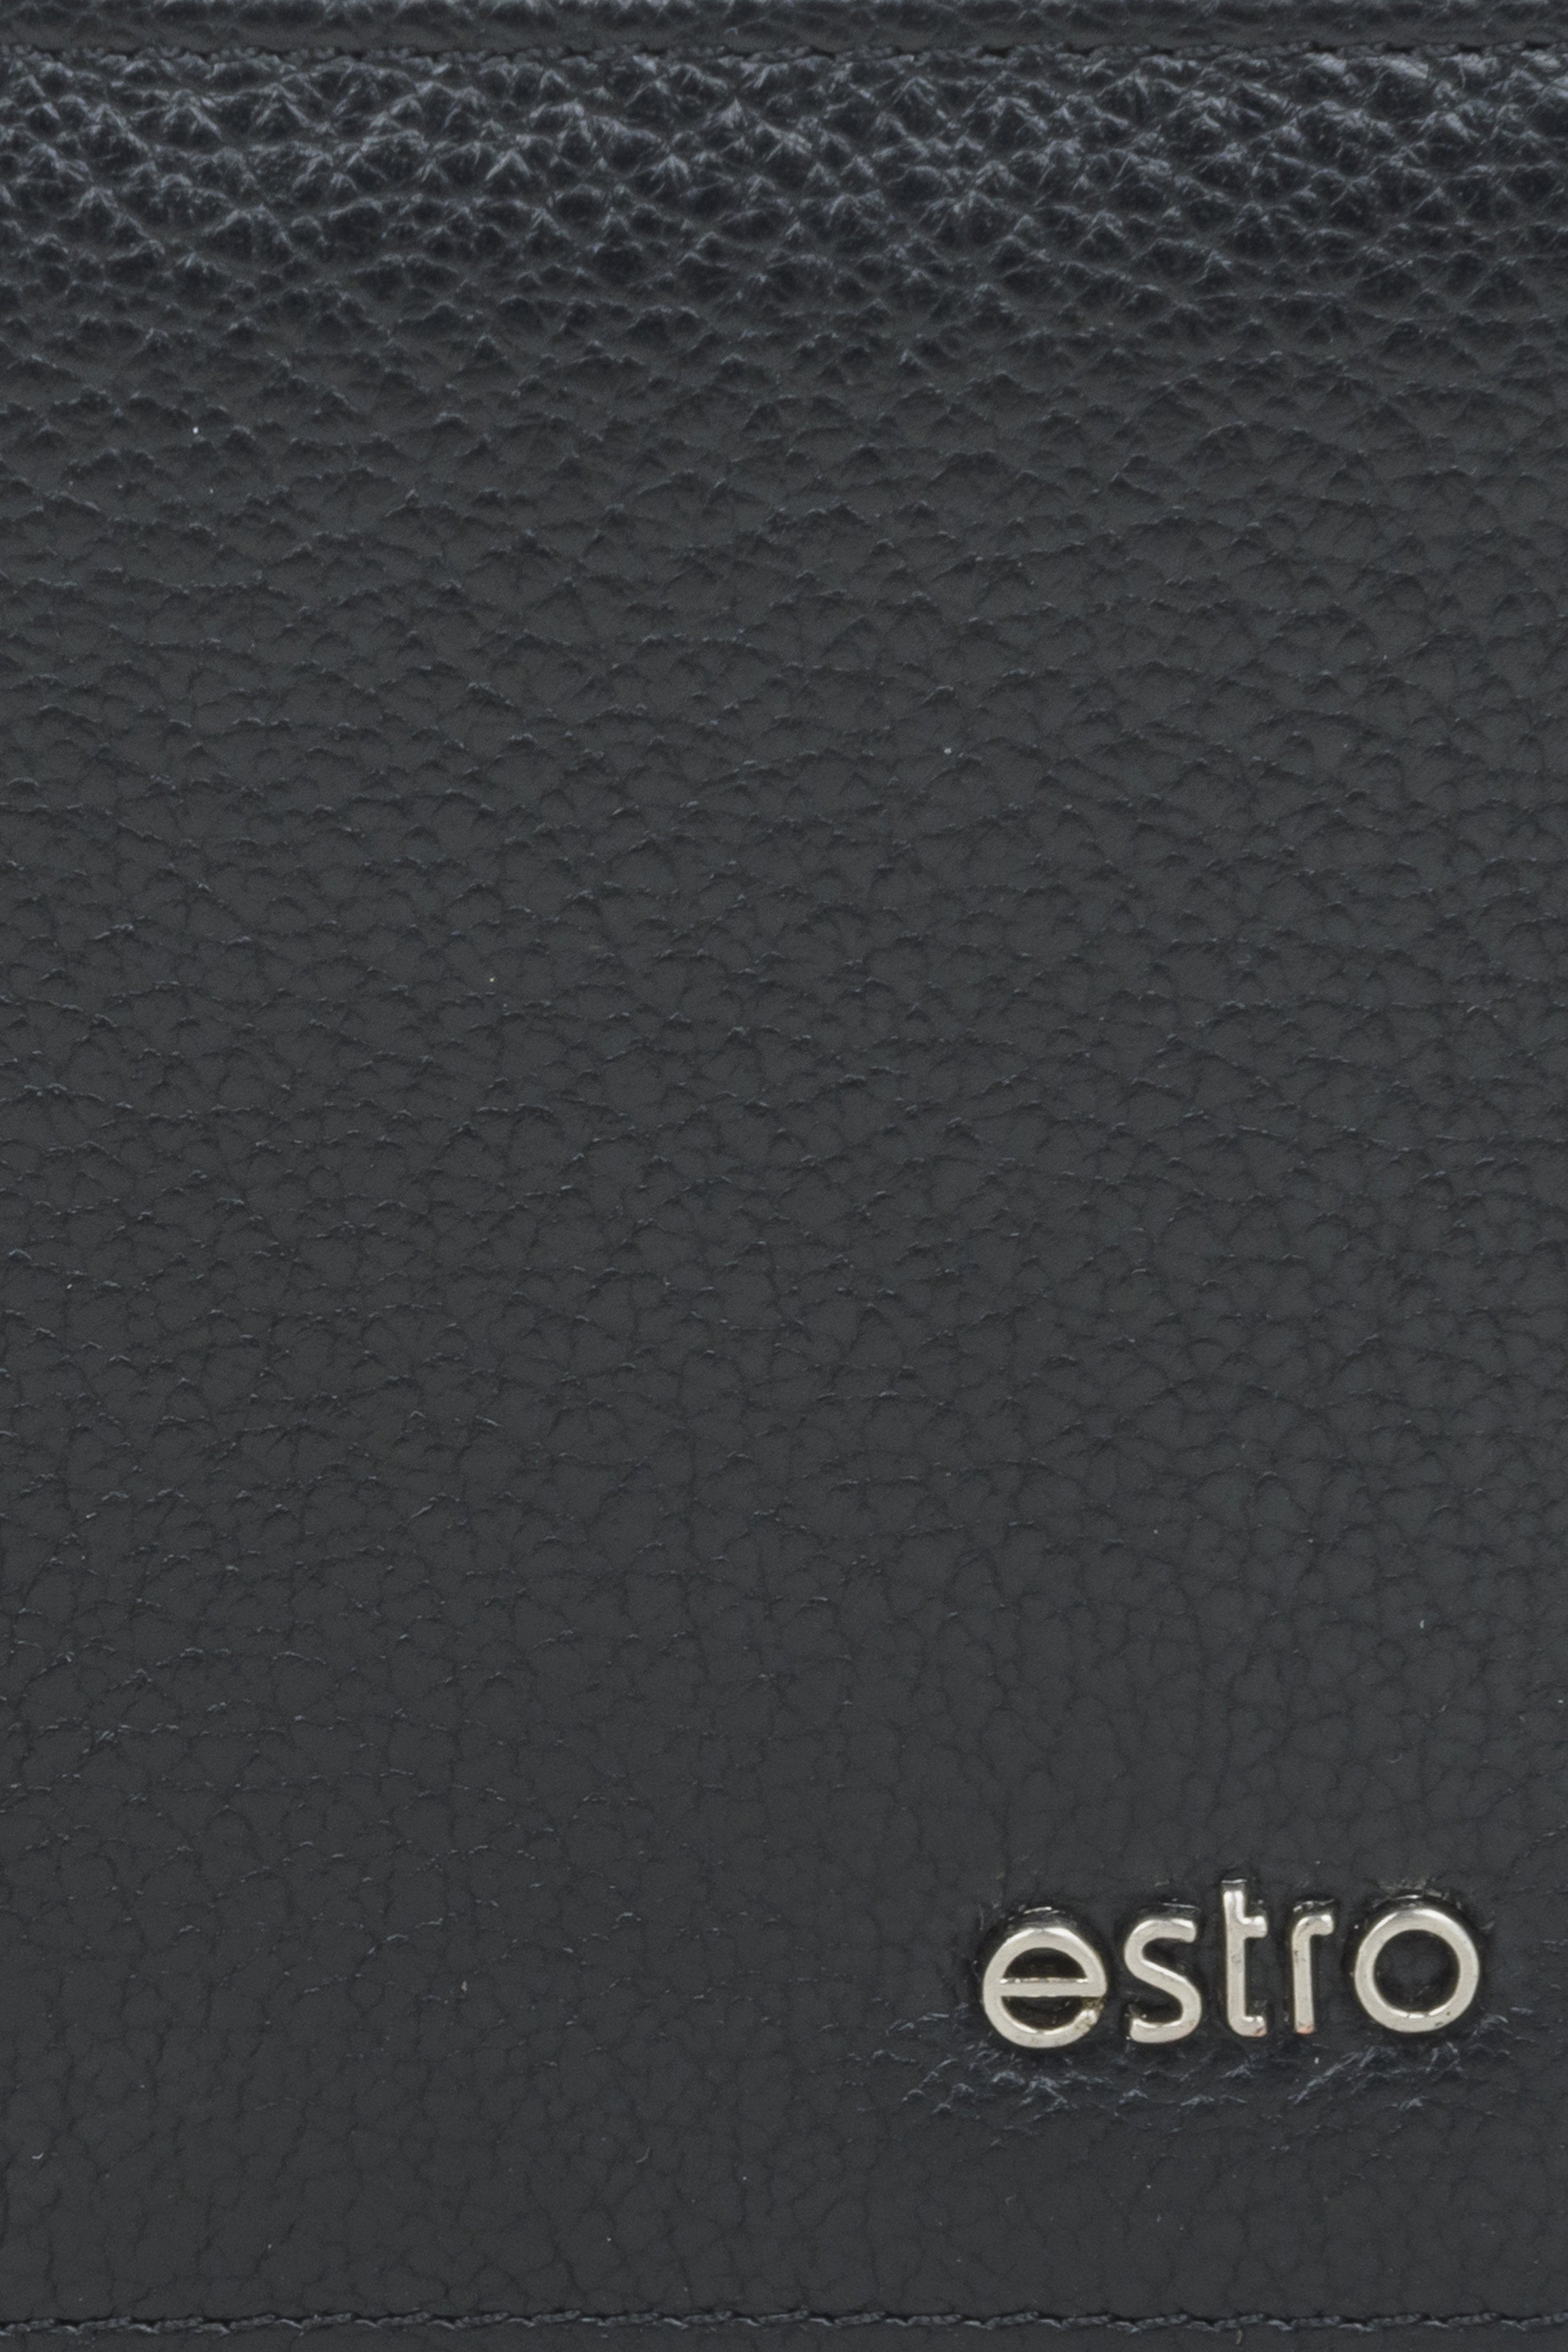 Poręczny czarny portfel męski Estro w kolorze czarnym - zbliżenie na detale.